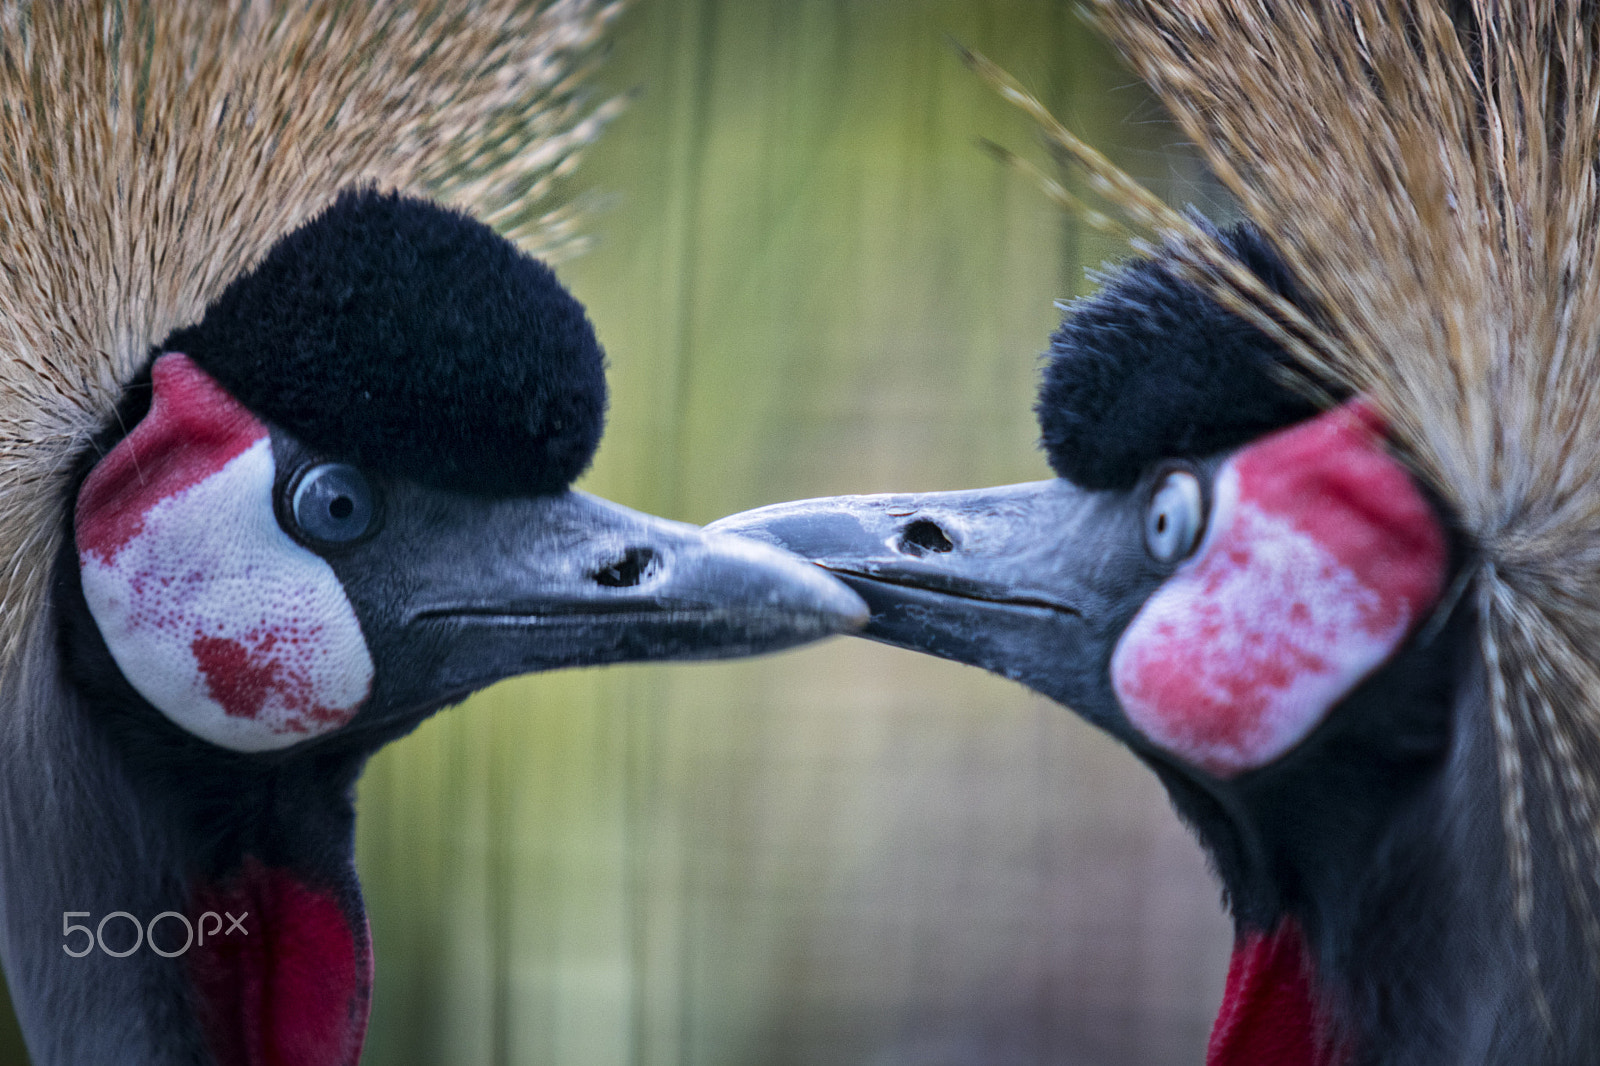 Canon EOS 80D sample photo. Grullas coronadas - crowned cranes photography